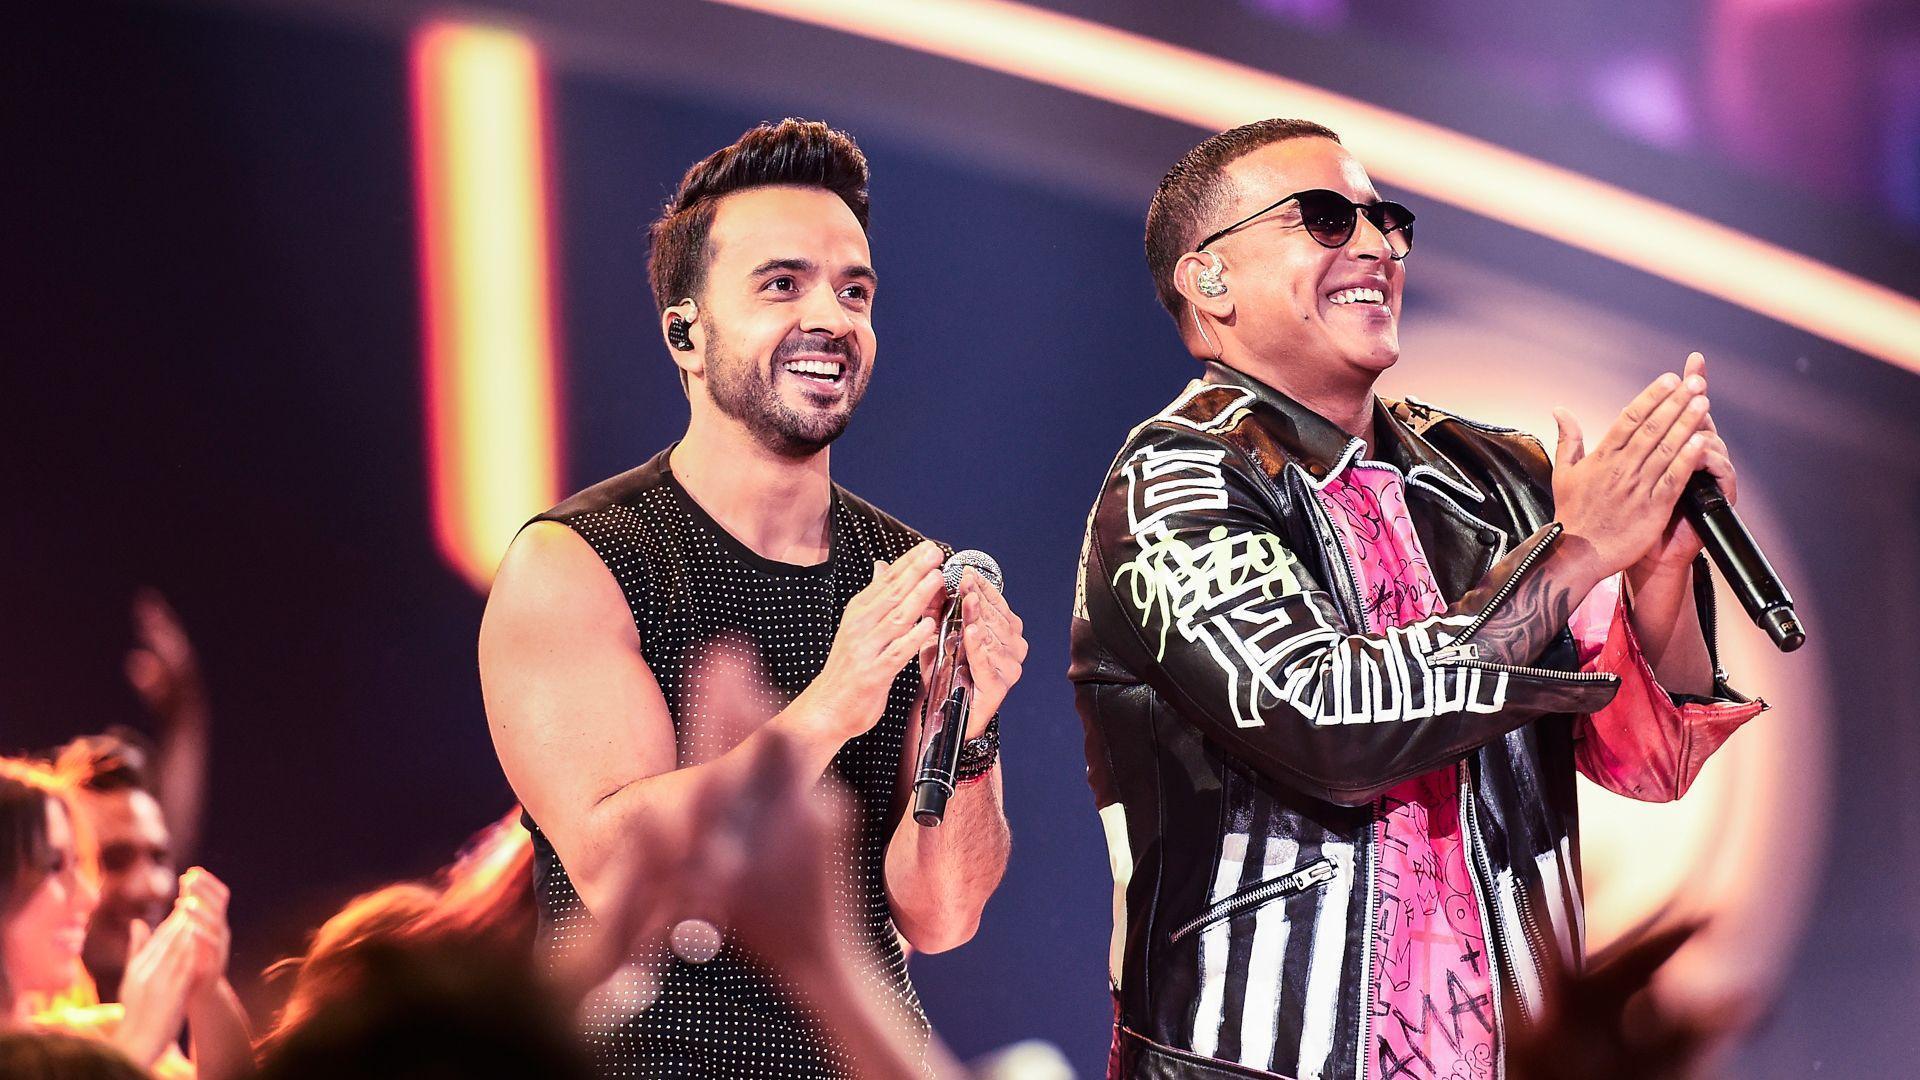 Luis Fonsi y Daddy Yankee cantan 'Despacito' en los Premios